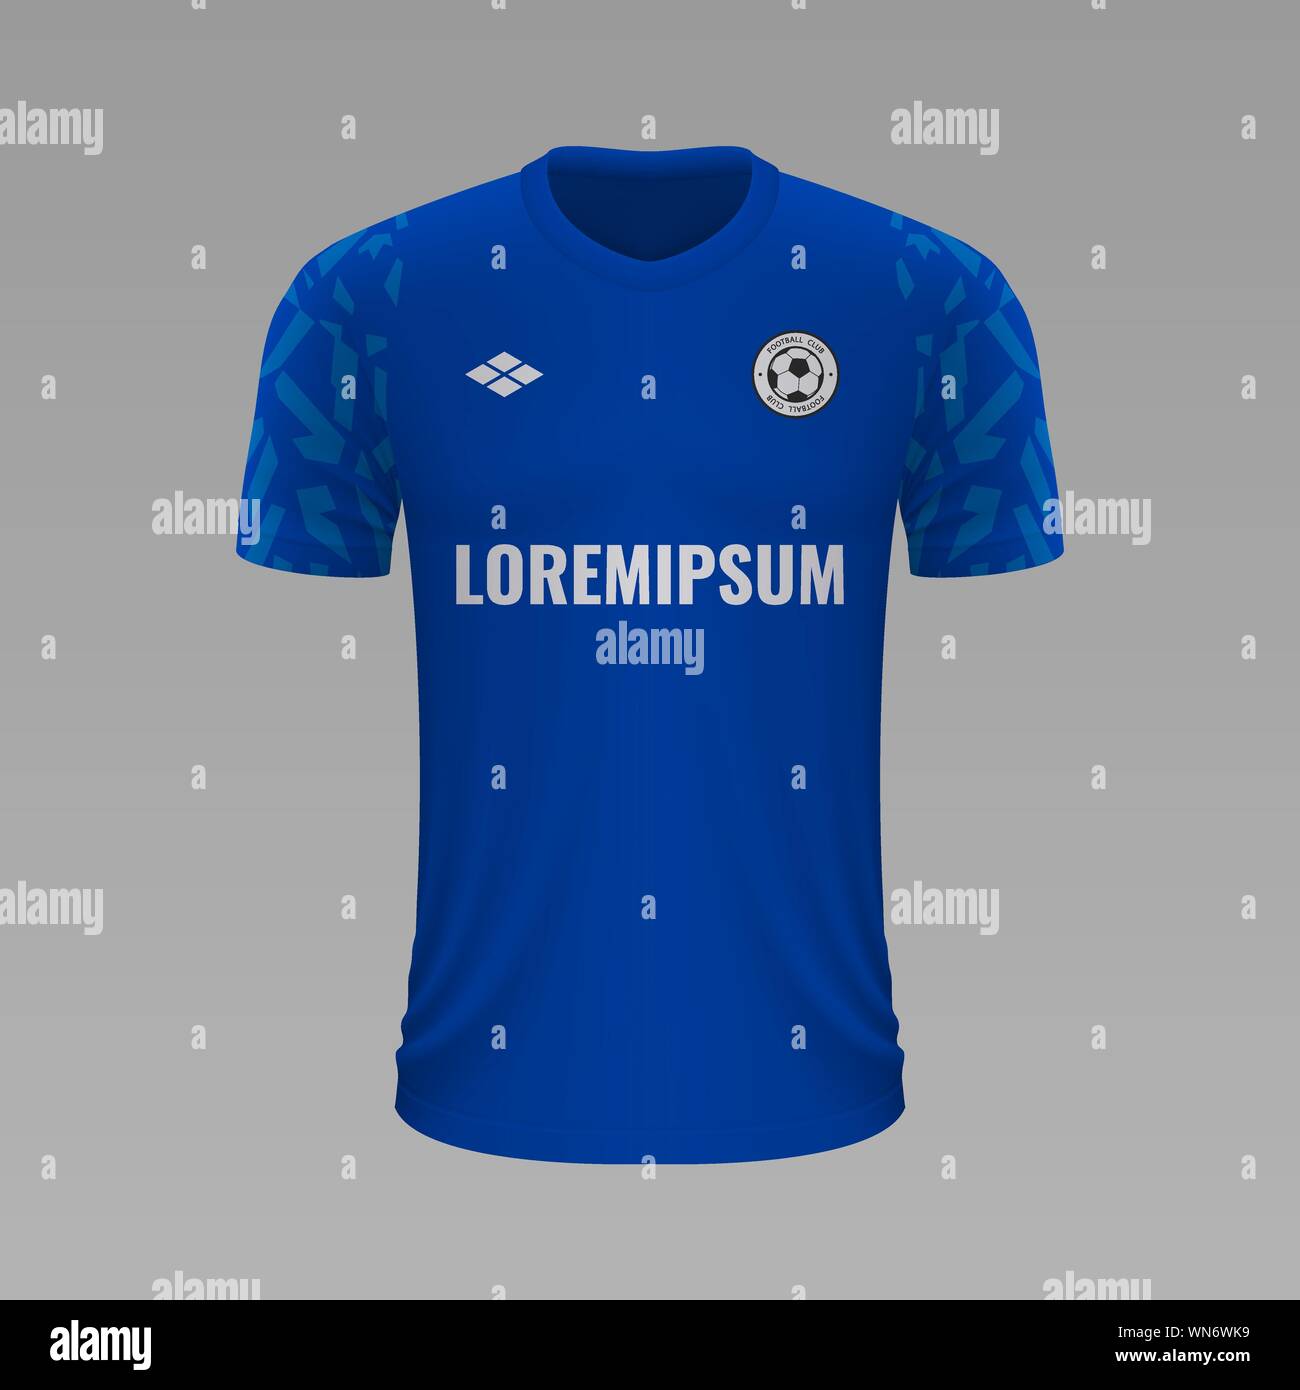 Soccer shirt réaliste Schalke 2020, jersey modèle pour kit de football Illustration de Vecteur